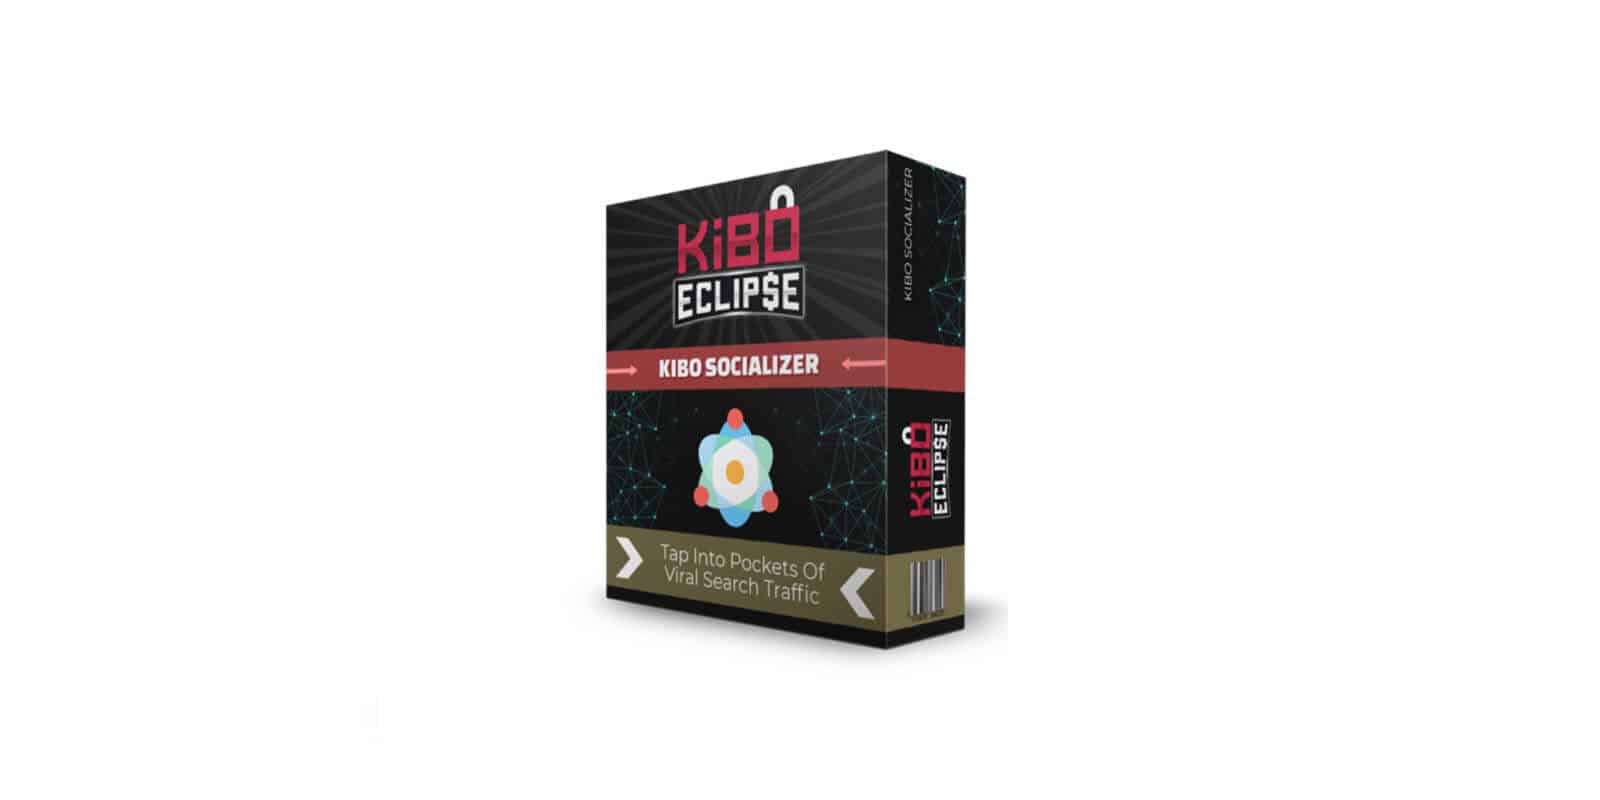 Kibo Eclipse Socializer